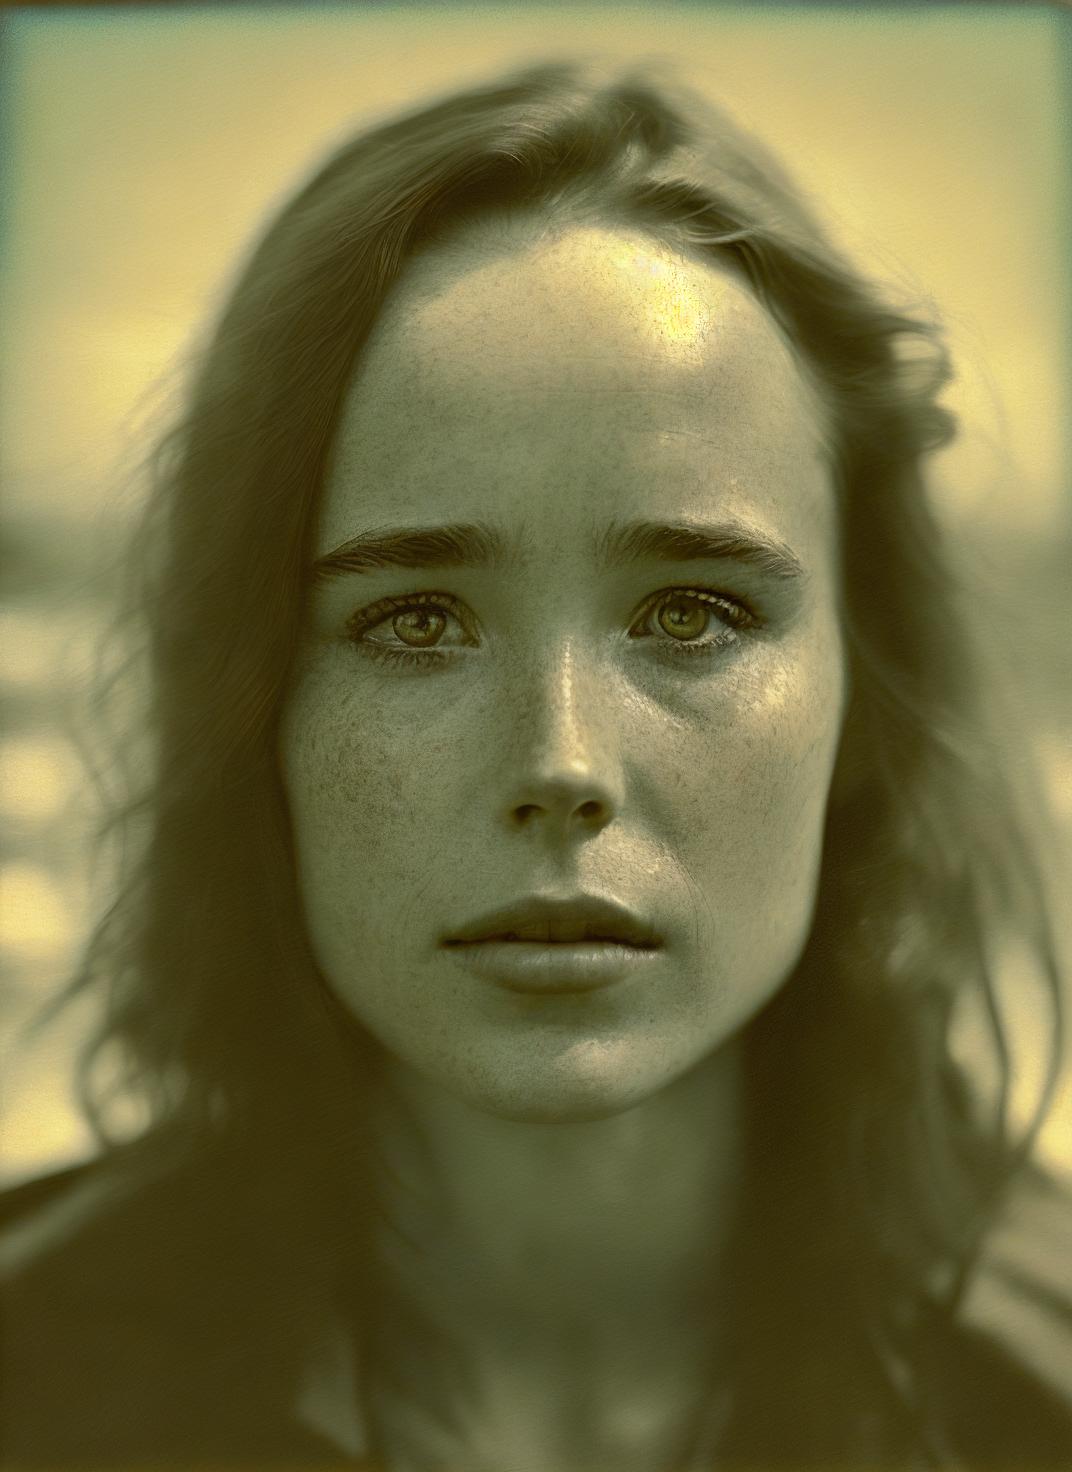 Ellen Page image by malcolmrey